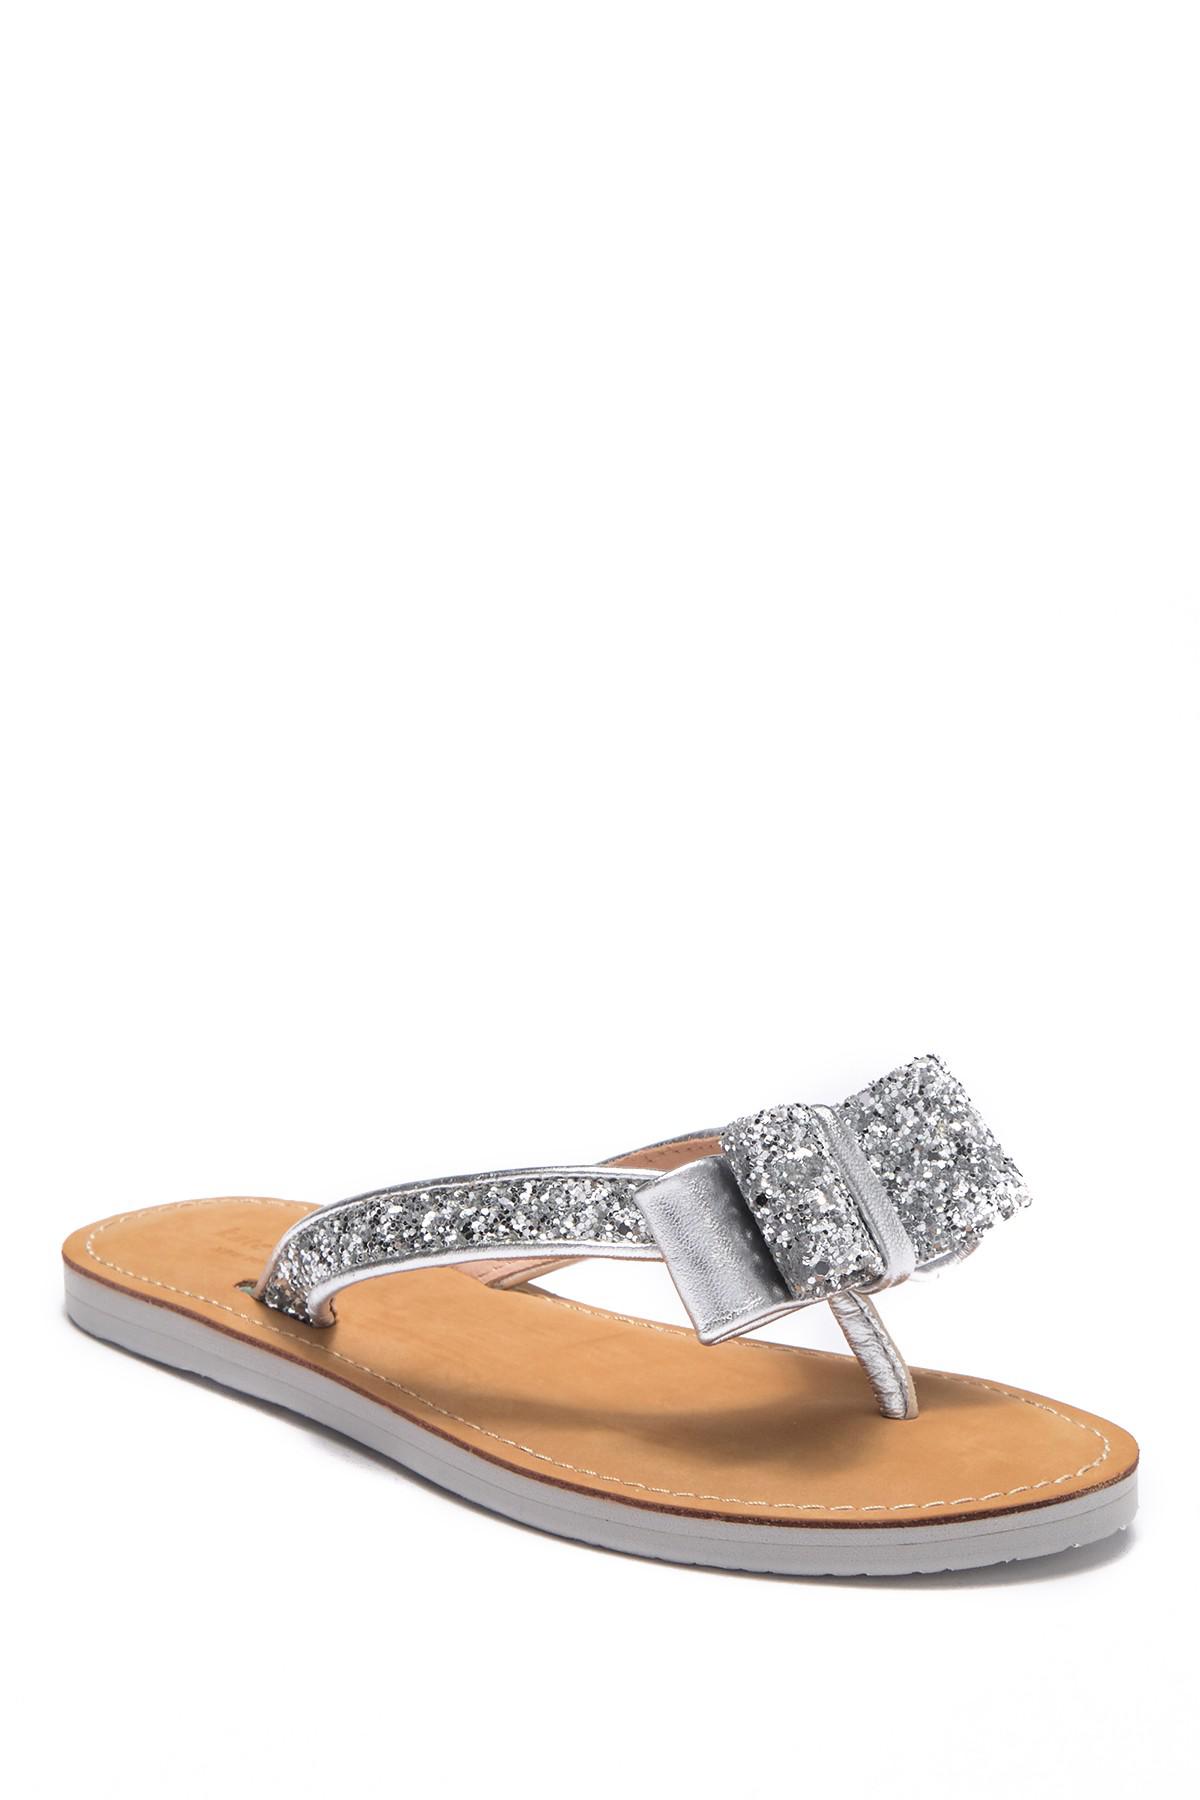 Kate Spade Icarda Glitter Bow Flip-flop in Metallic | Lyst